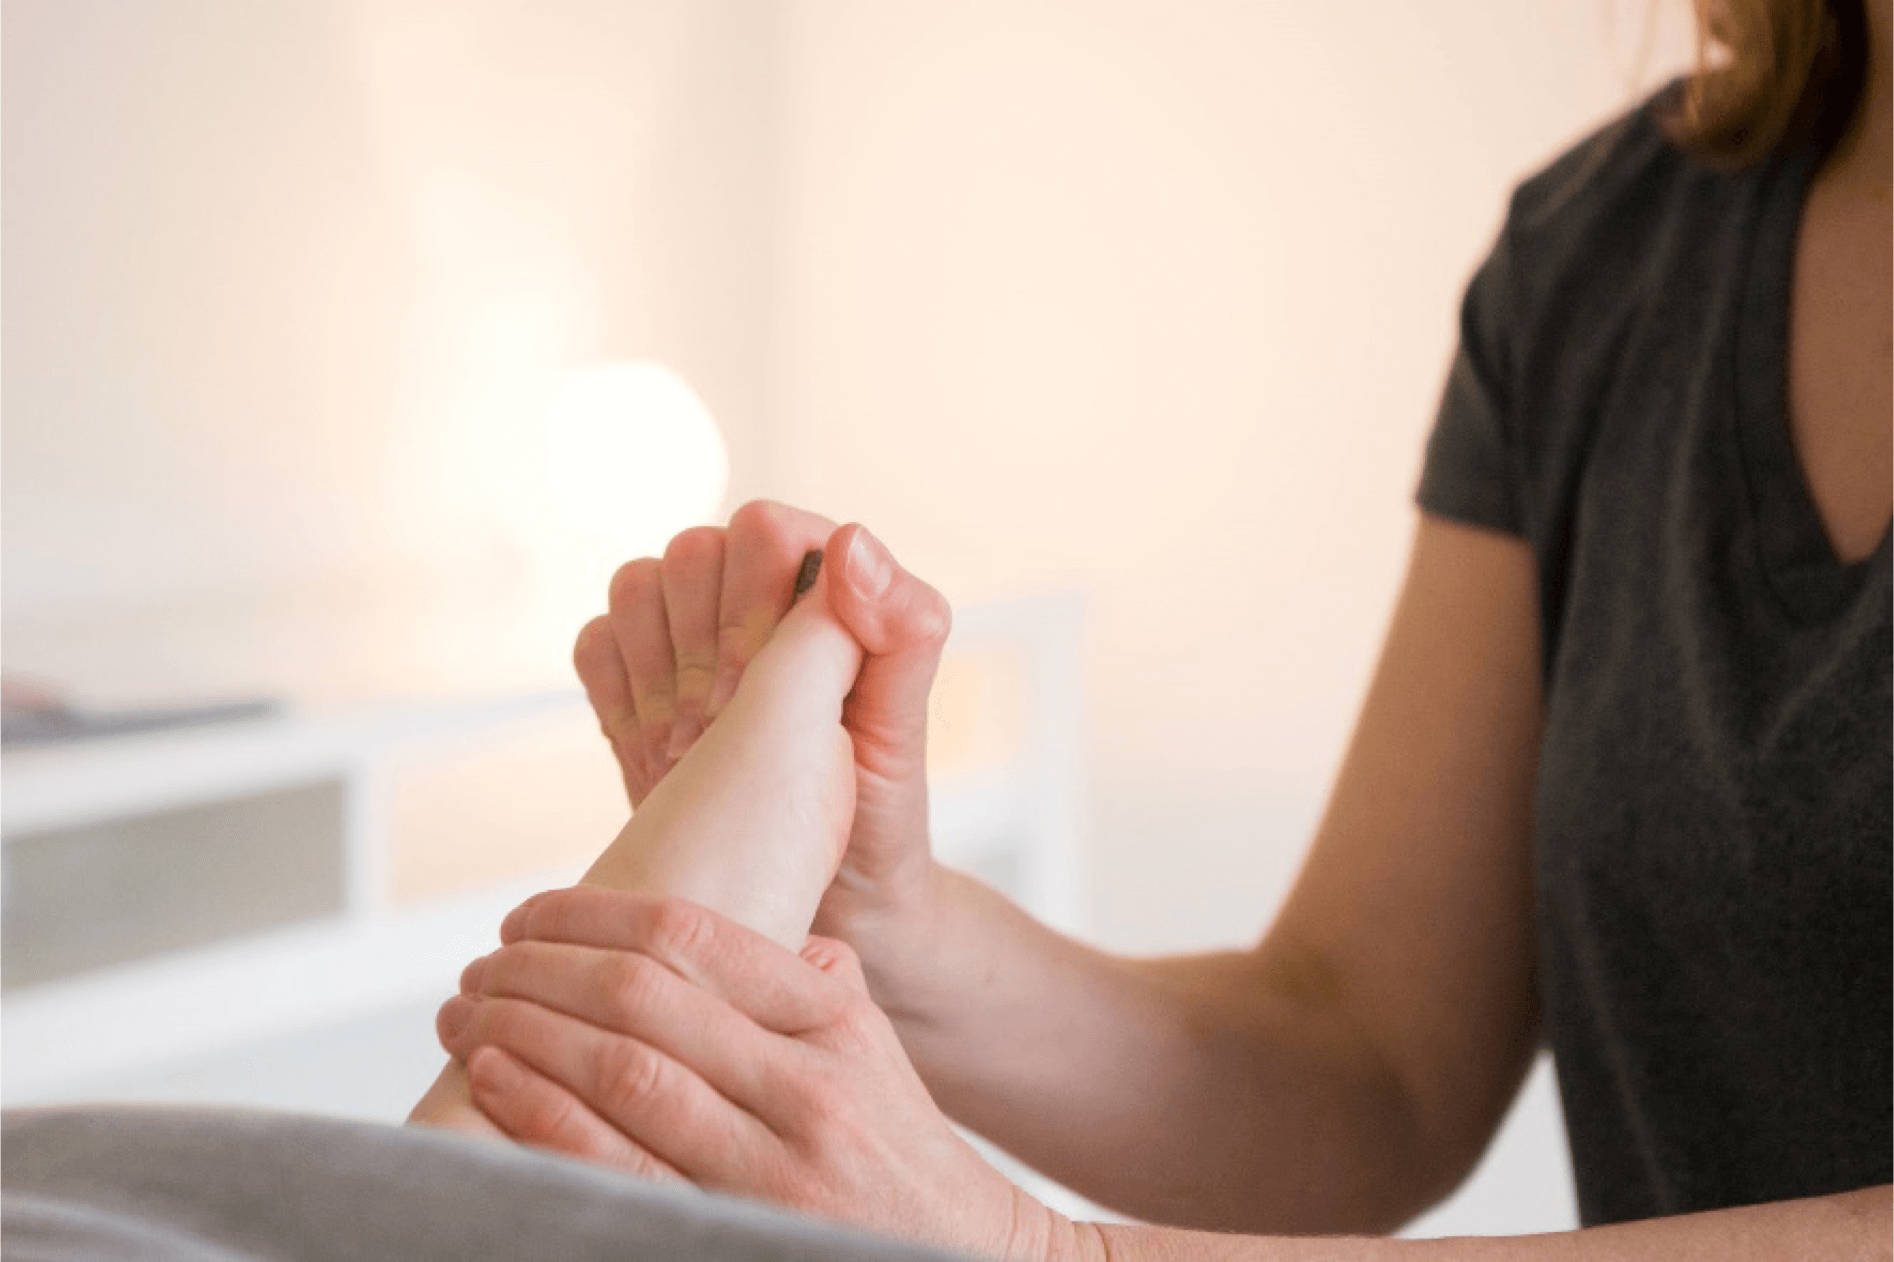 Massaging Feet